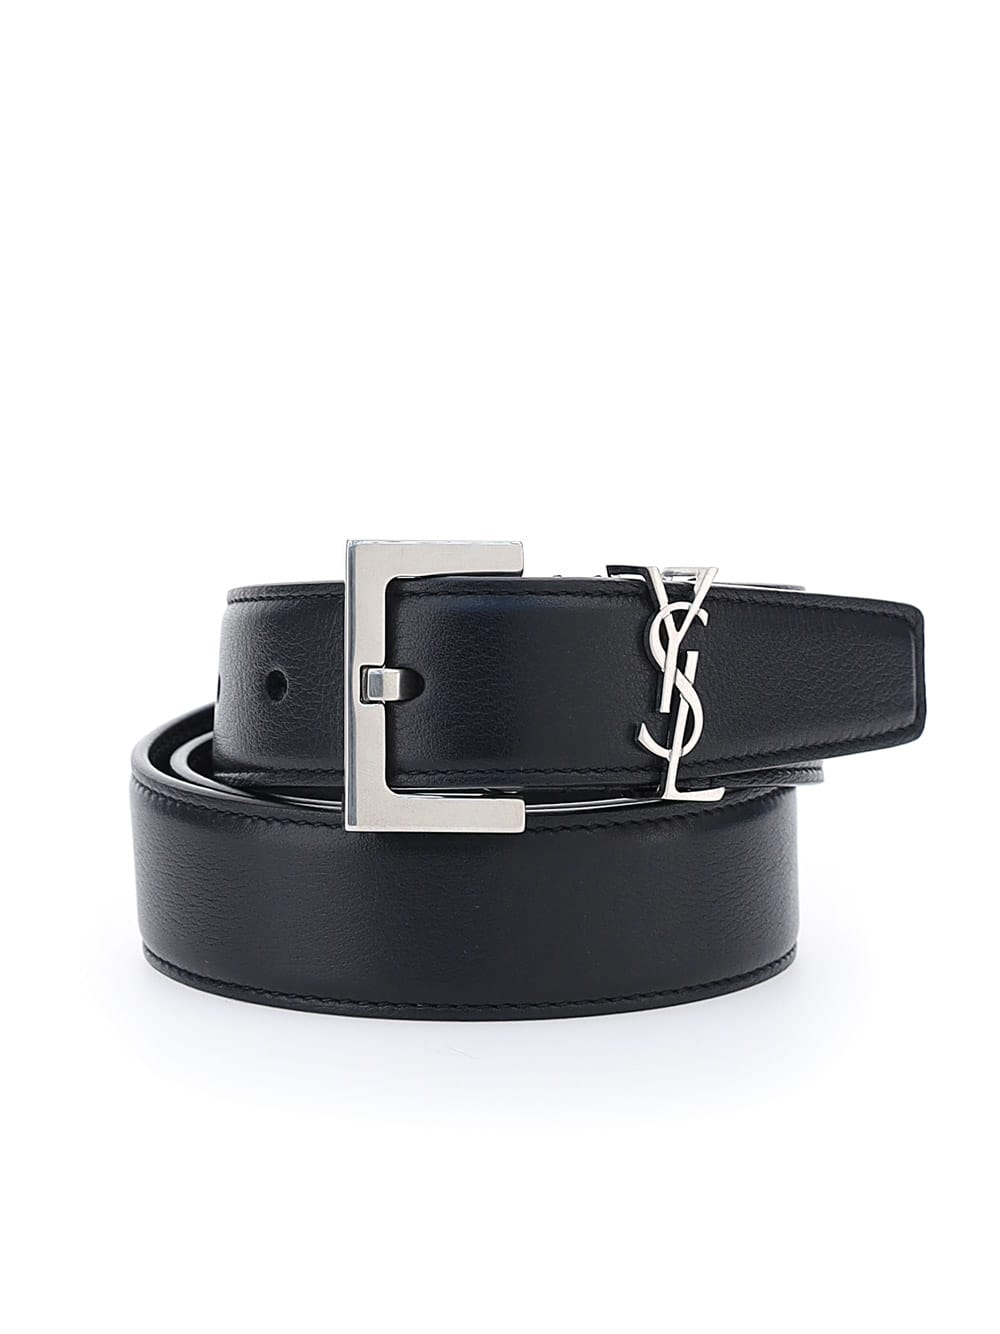 Saint Laurent Box Laque Ysl Leather Belt, Cream / Bronze, Women's, 36in / 90cm, Belts Leather Belts